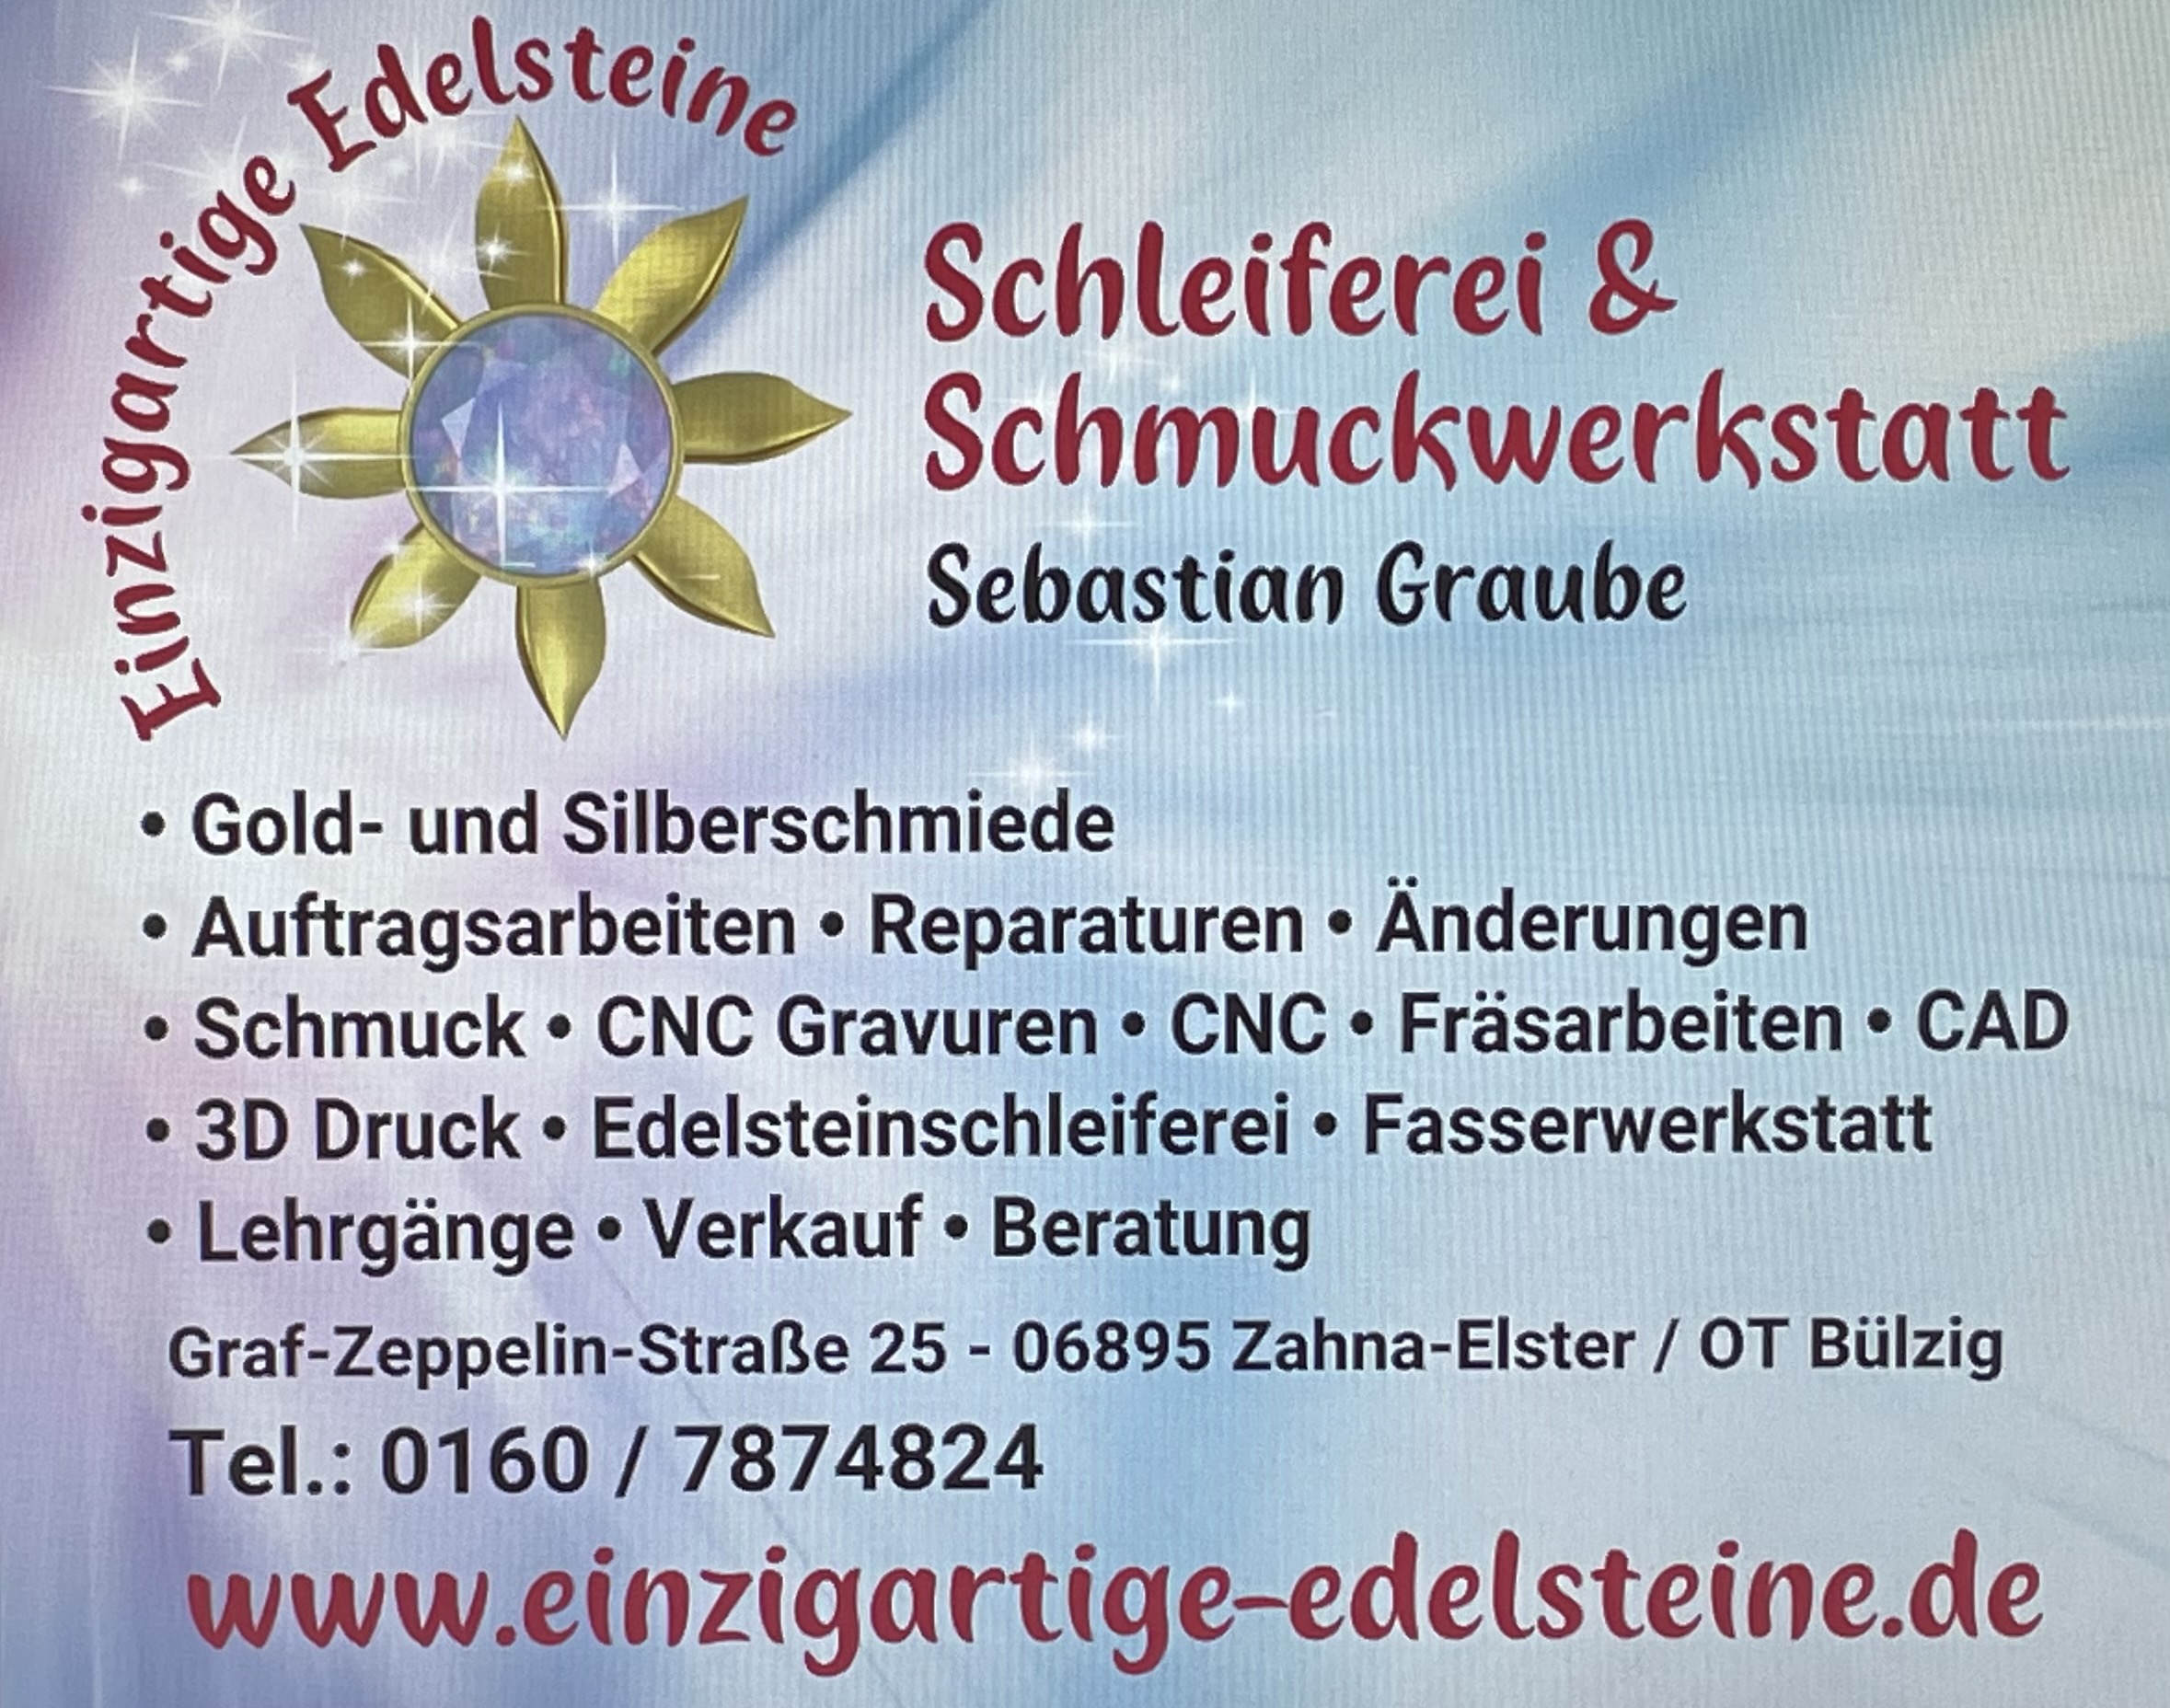 Bild 3 Einzigartige Edelsteine Schleiferei & Schmuckwerkstatt in Zahna-Elster